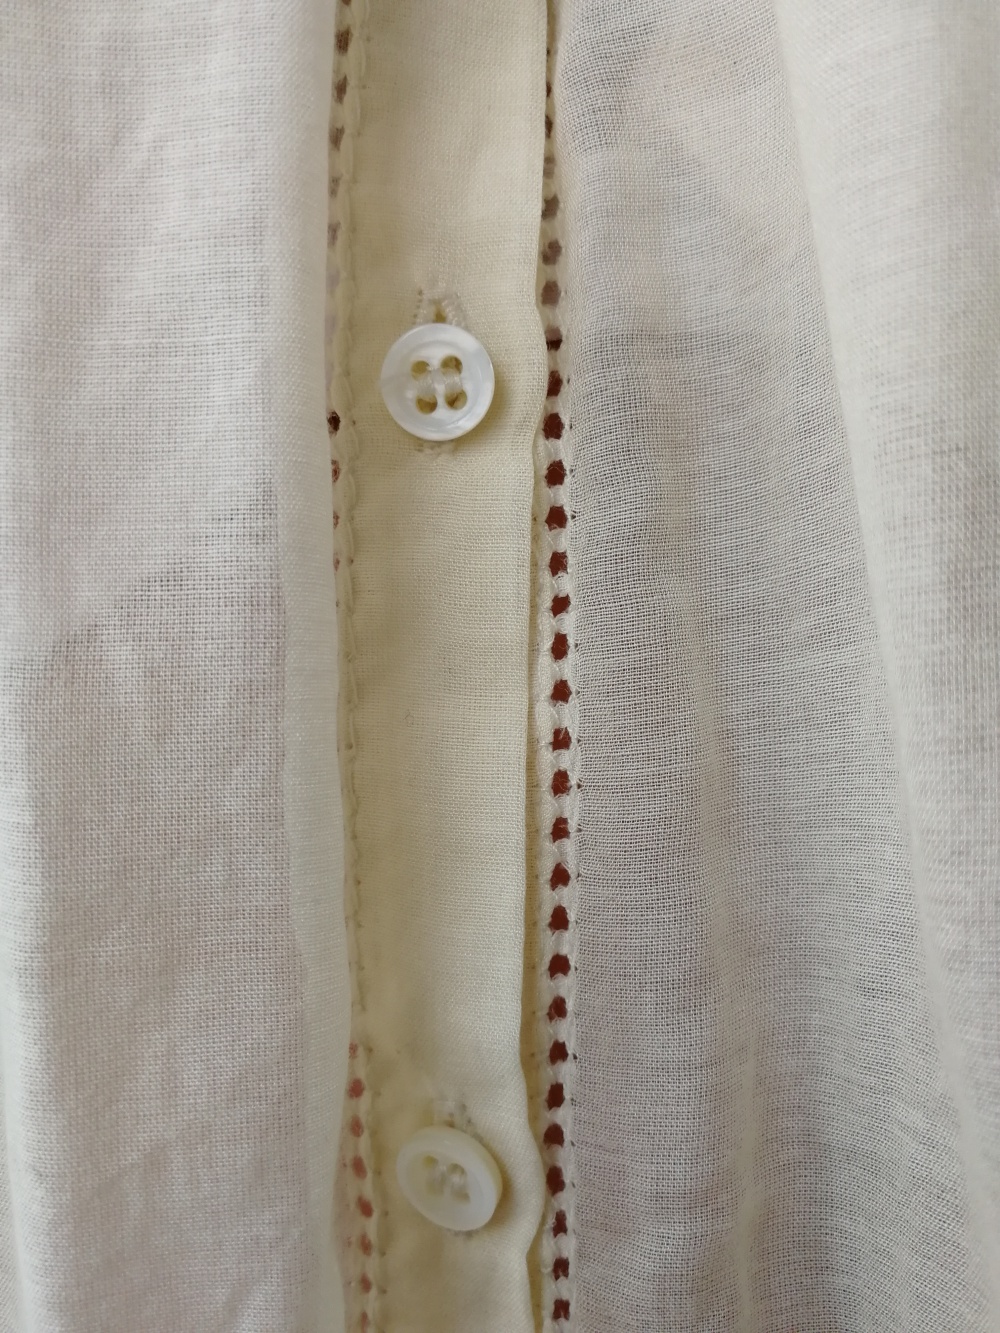 Шелковая блузка "Zara Woman", 48-50 (XL) размер